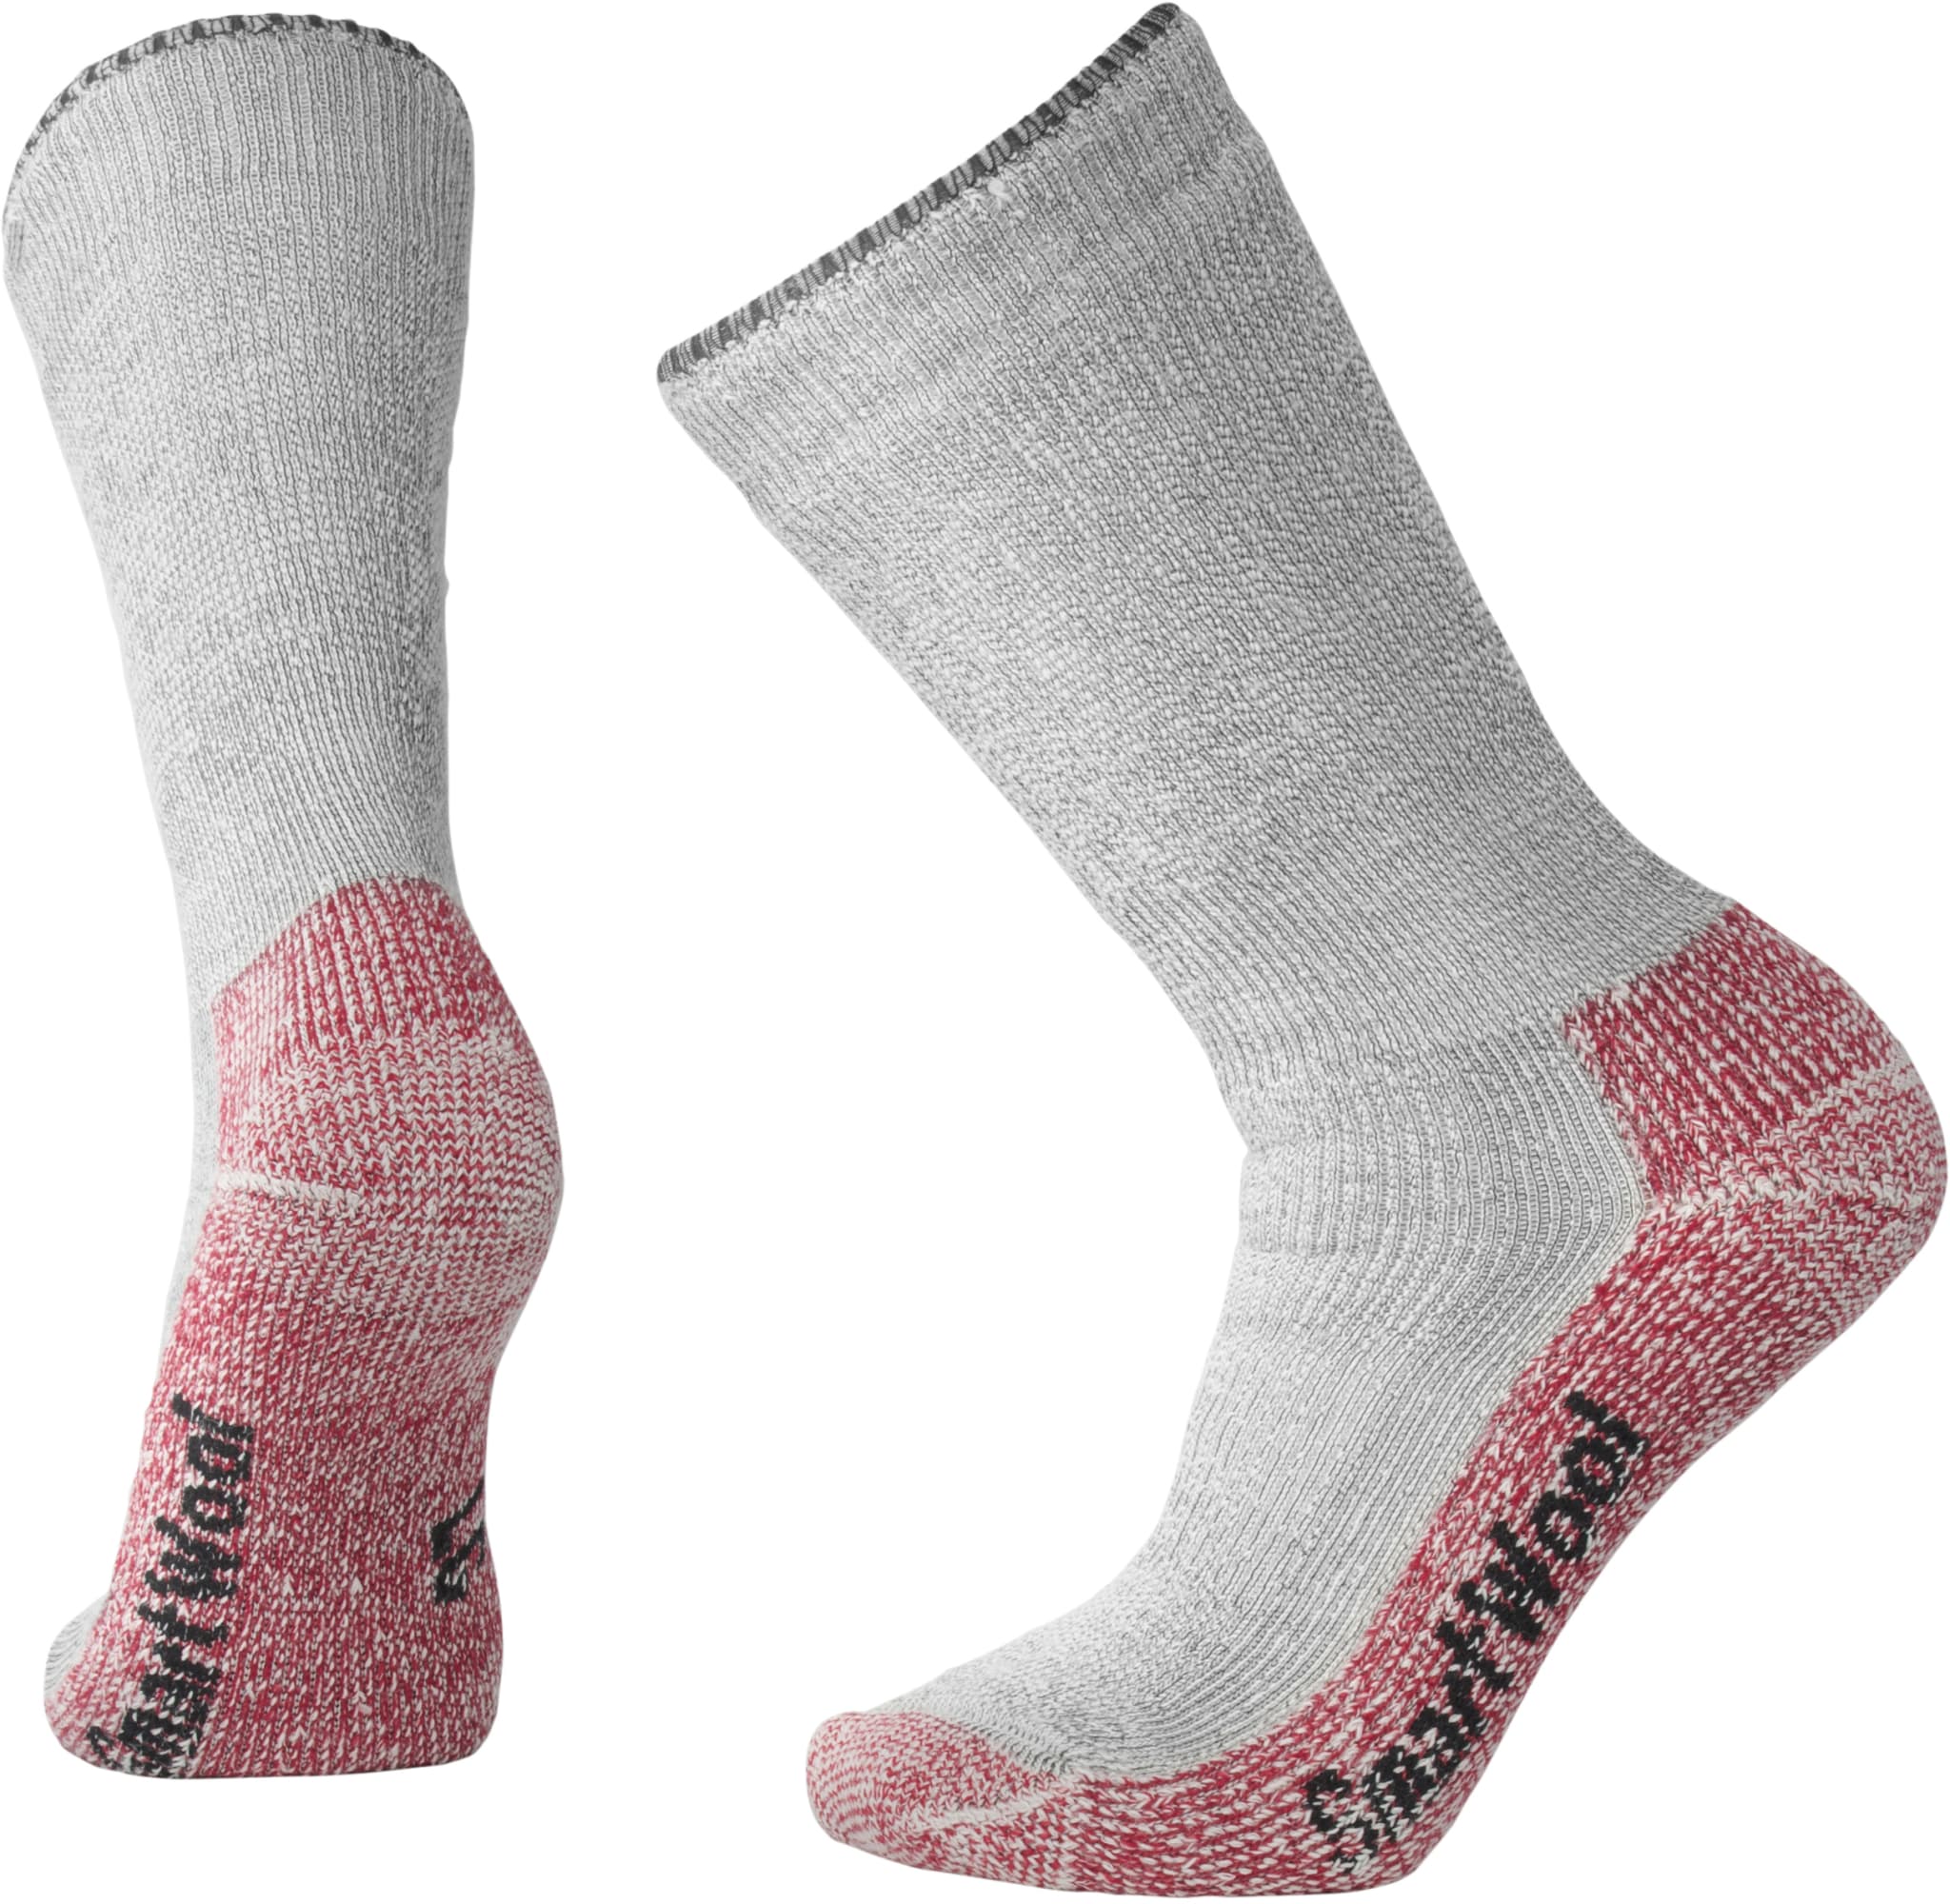 De varmeste sokkene fra Smartwool!